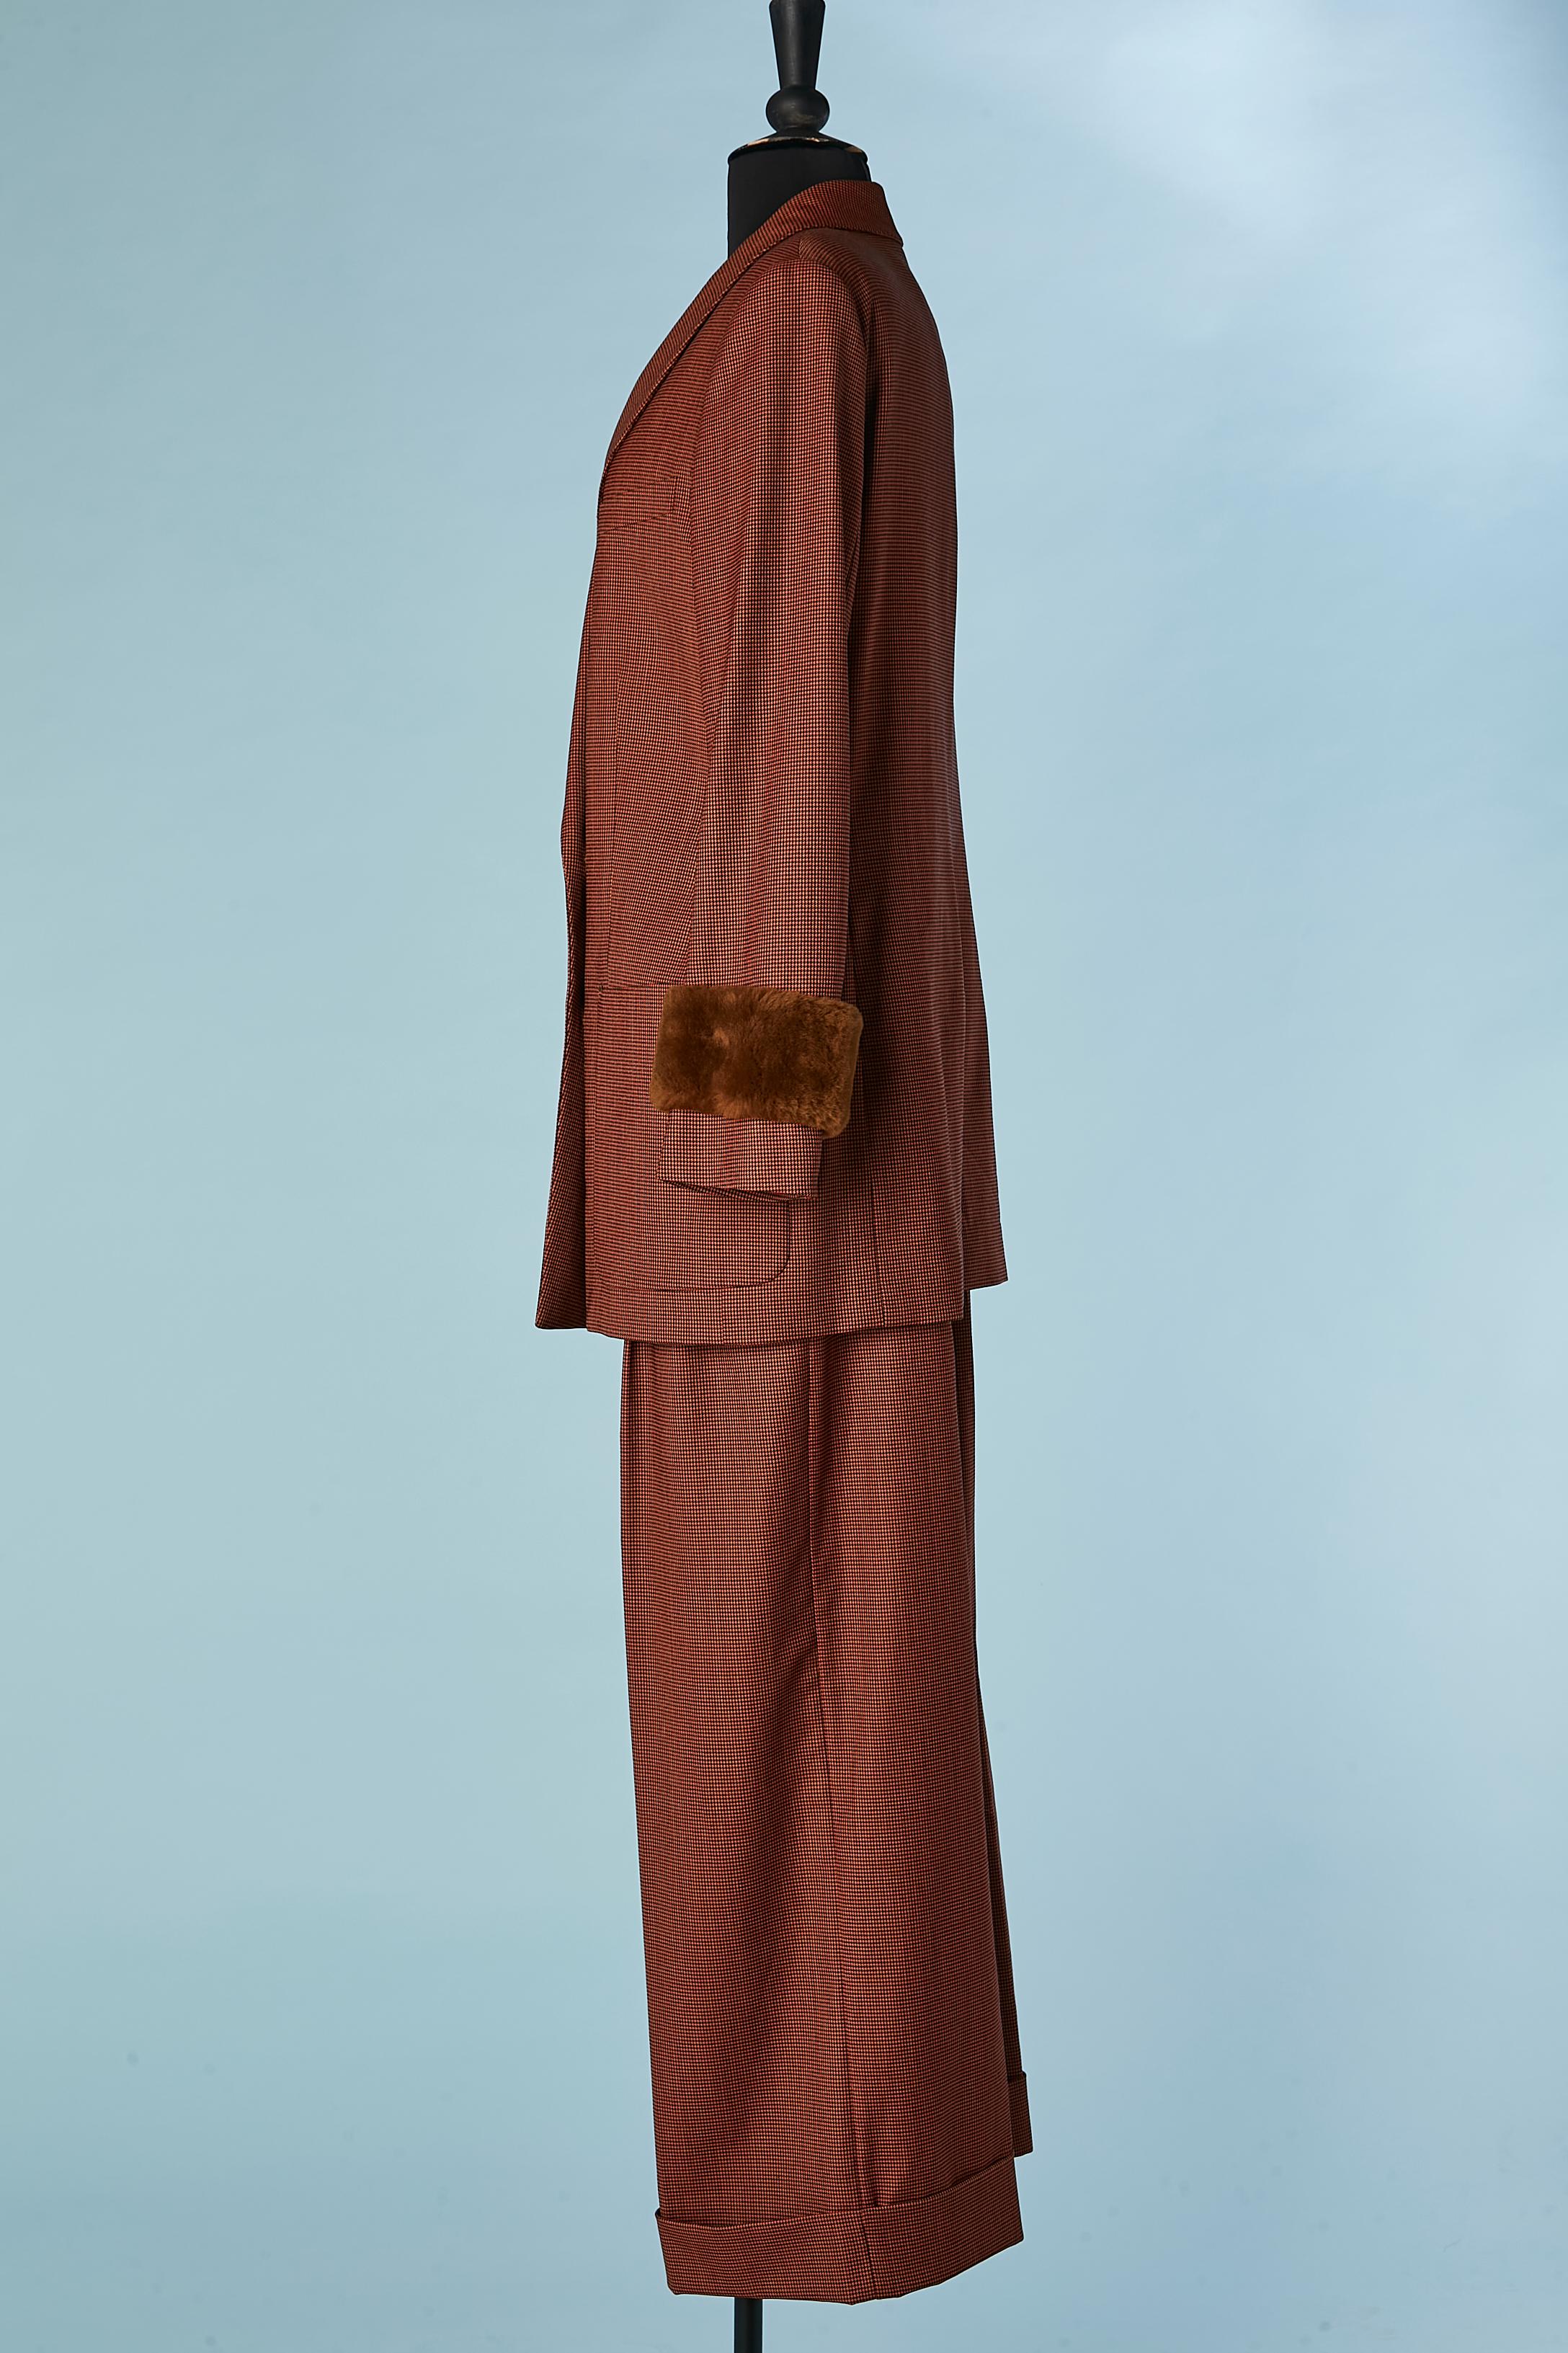 Brown and black mini Pied de poule pattern trouser-suit with fur cuffs FENDI  For Sale 2